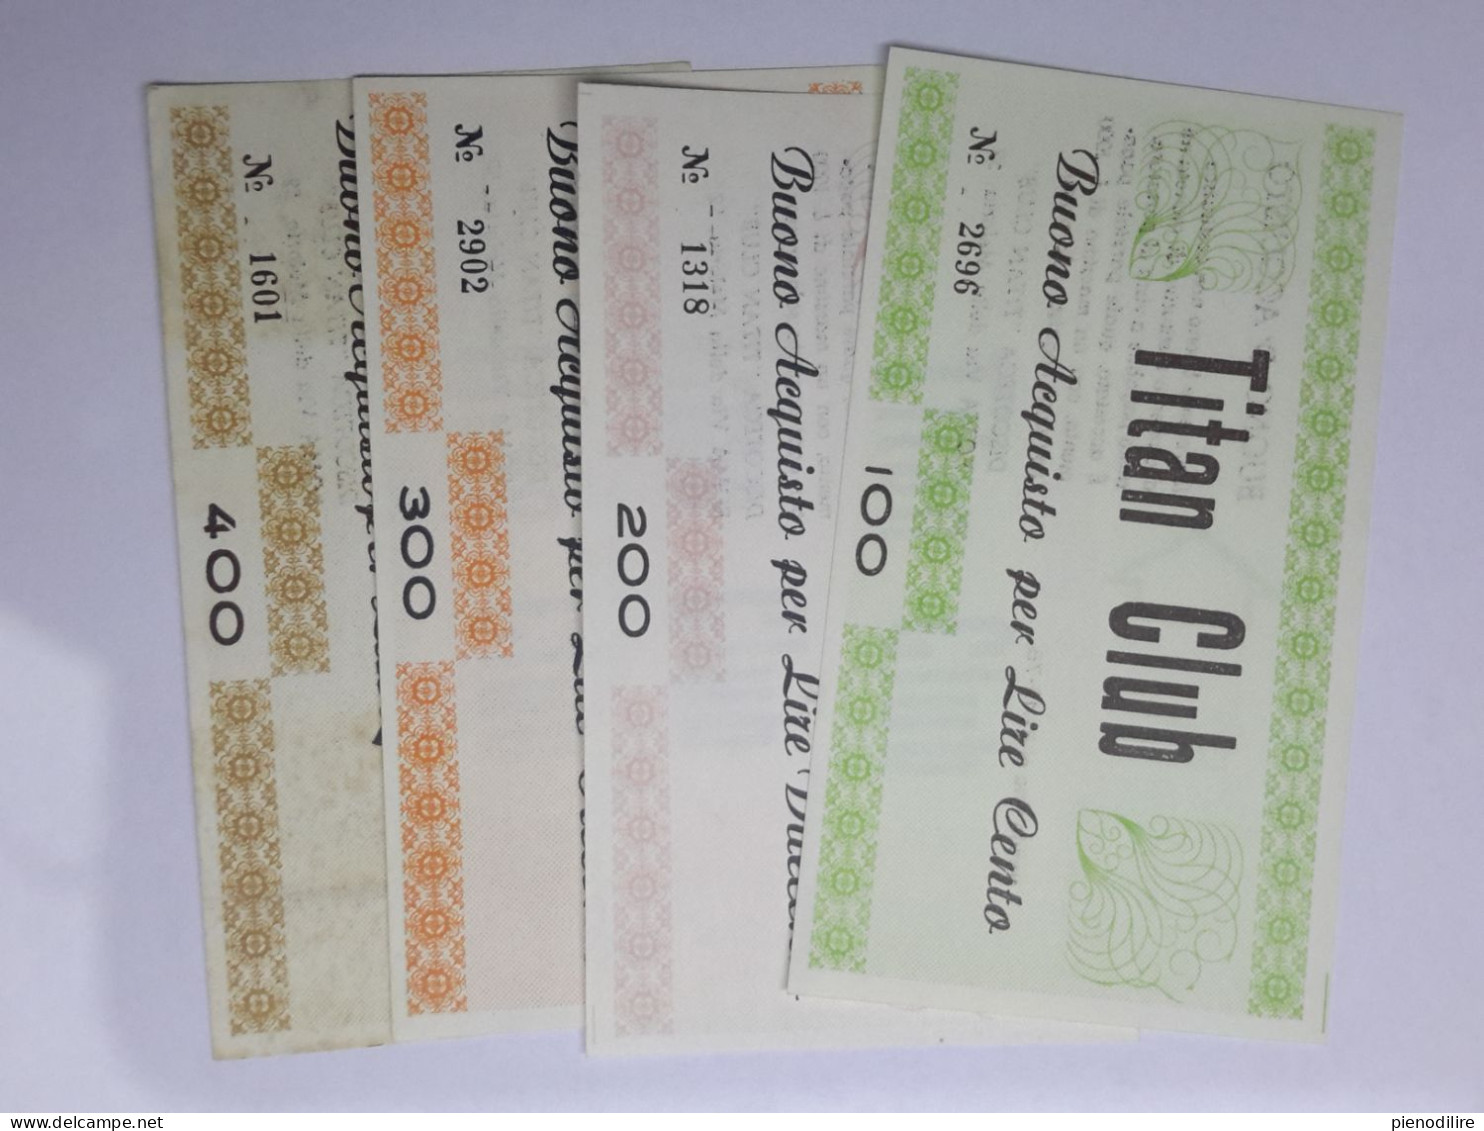 LOTTO 4Pz. 100 200 300 400 LIRE BUONI ACQUISTO TITAN CLUB VALIDO FINO AL 31.12.1976 (A.3) - [10] Cheques Y Mini-cheques